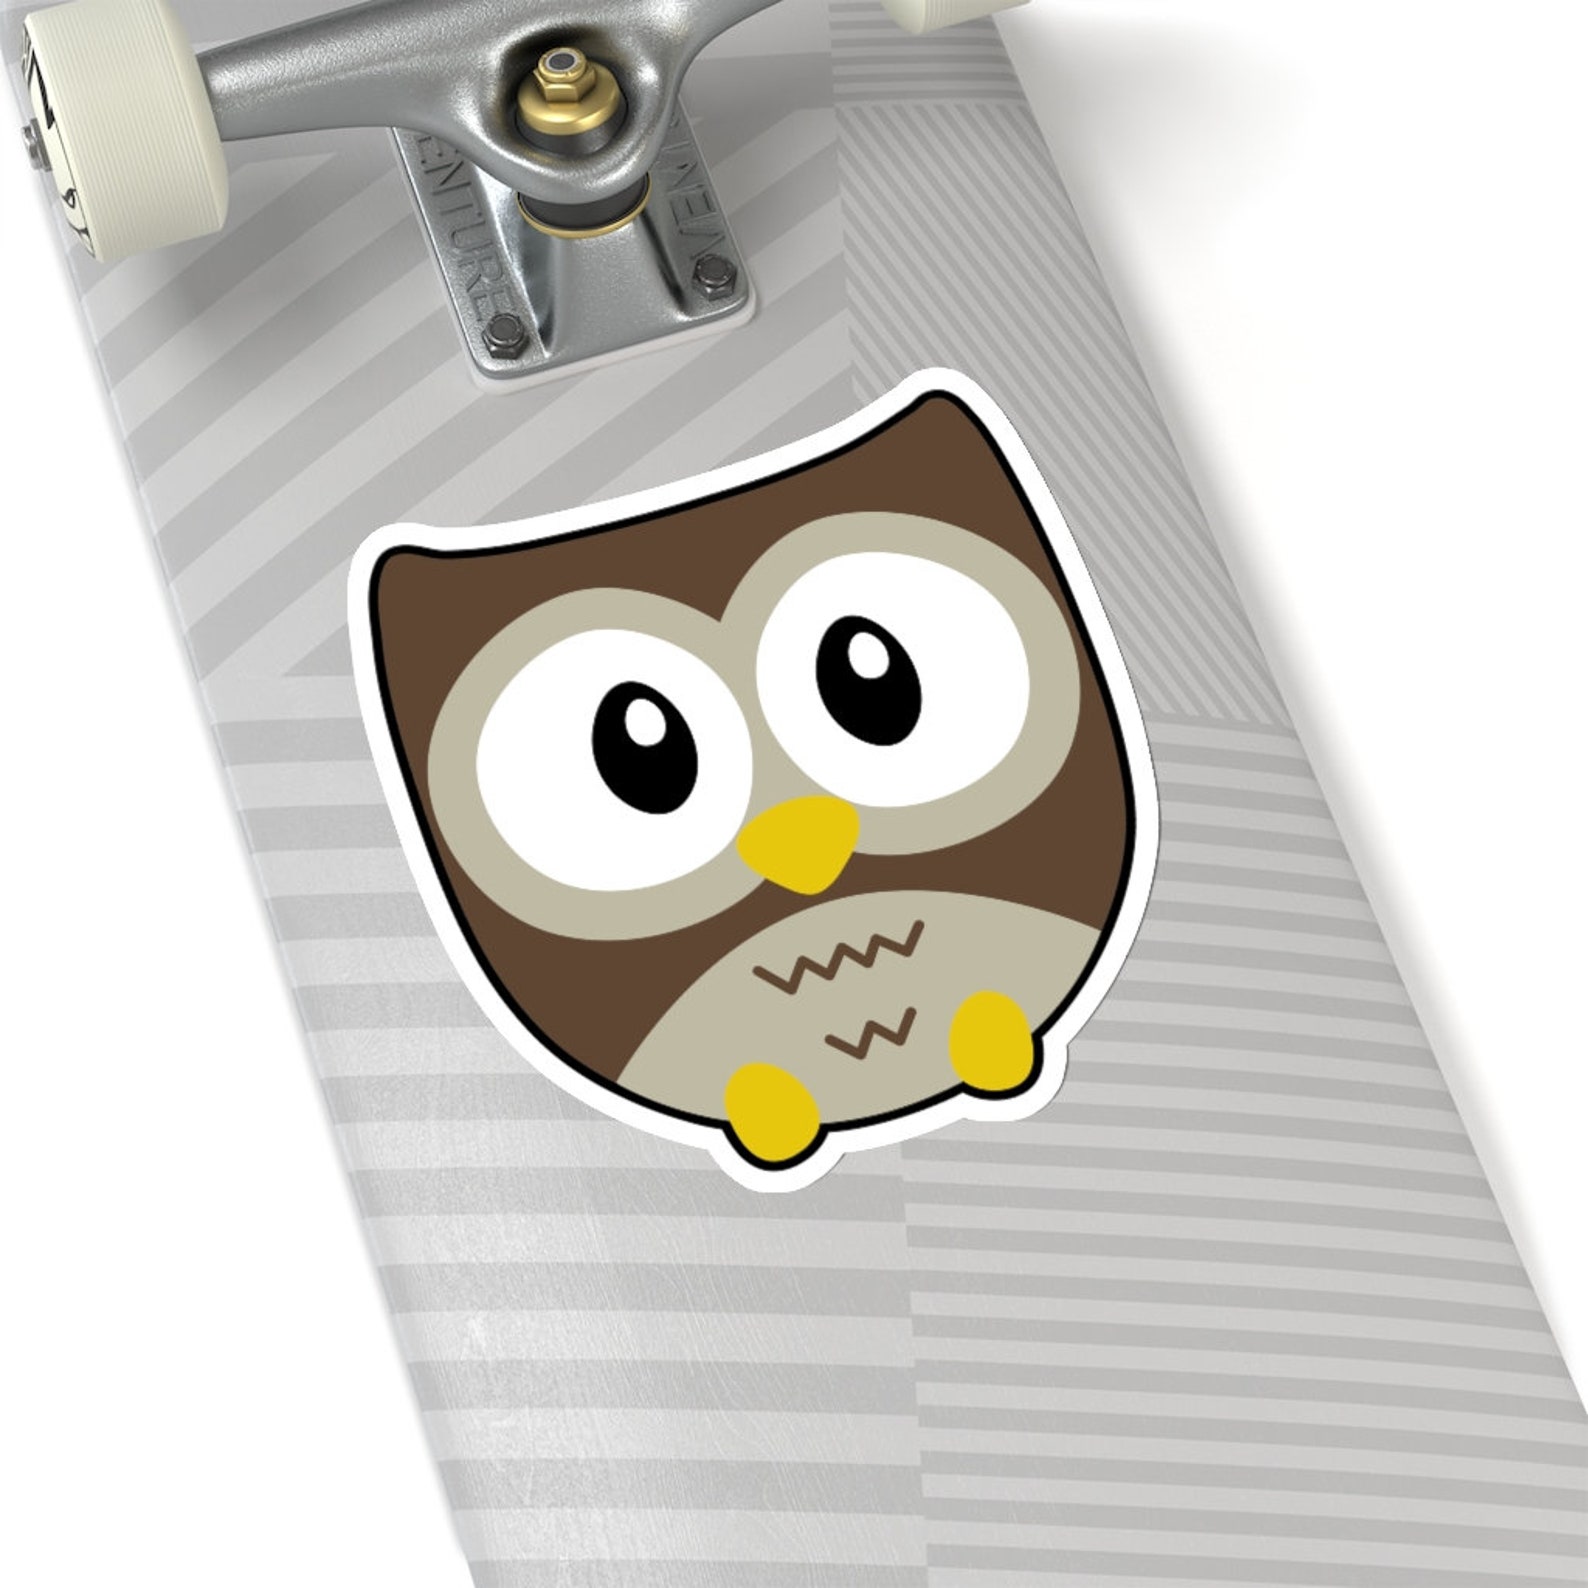 Owl Sticker Chart